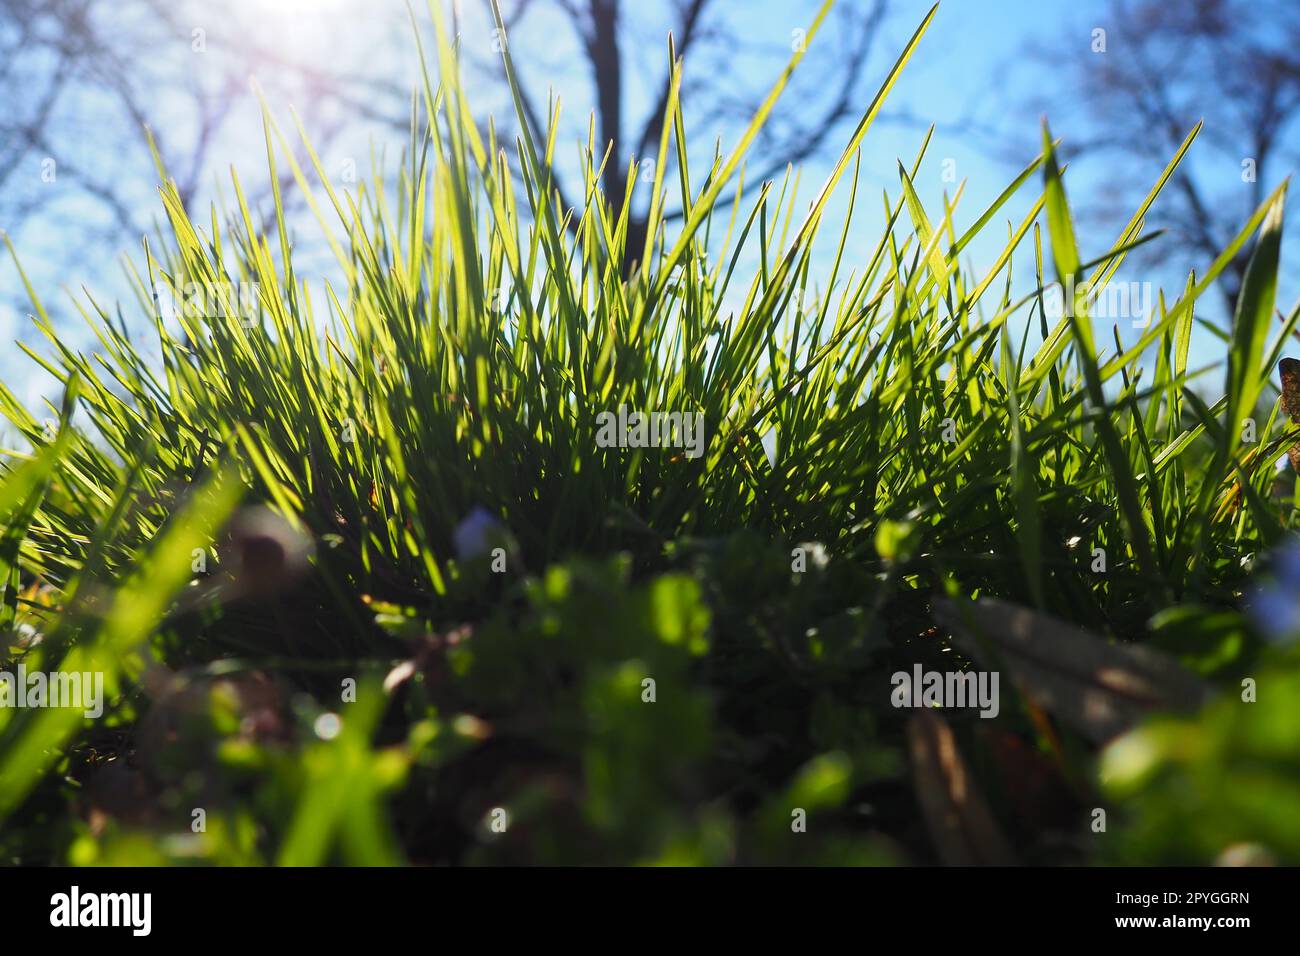 Junges saftiges grünes Gras in den Sonnenstrahlen der Morgensonne vor dem blauen Himmel. Frühling in Serbien. Sonniger Marsch. Die Bäume haben ihre Blätter noch nicht freigesetzt. Nahaufnahme des Grases, geringe Schärfentiefe Stockfoto